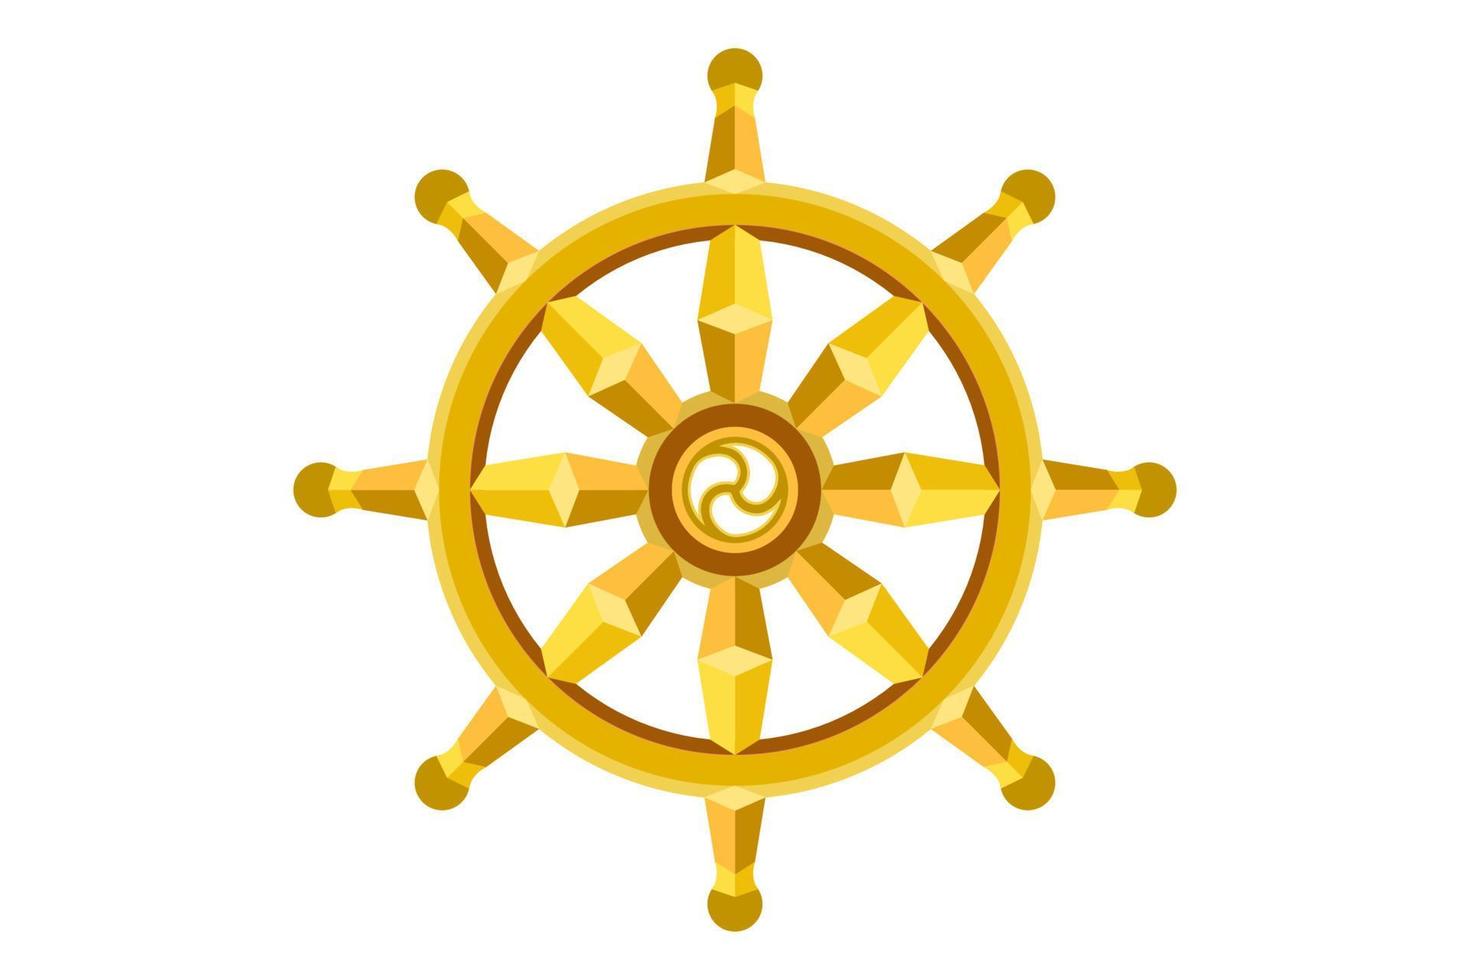 roda dourada do dharma. símbolo sagrado do budismo. dharmachakra. ilustração vetorial isolada no fundo branco vetor